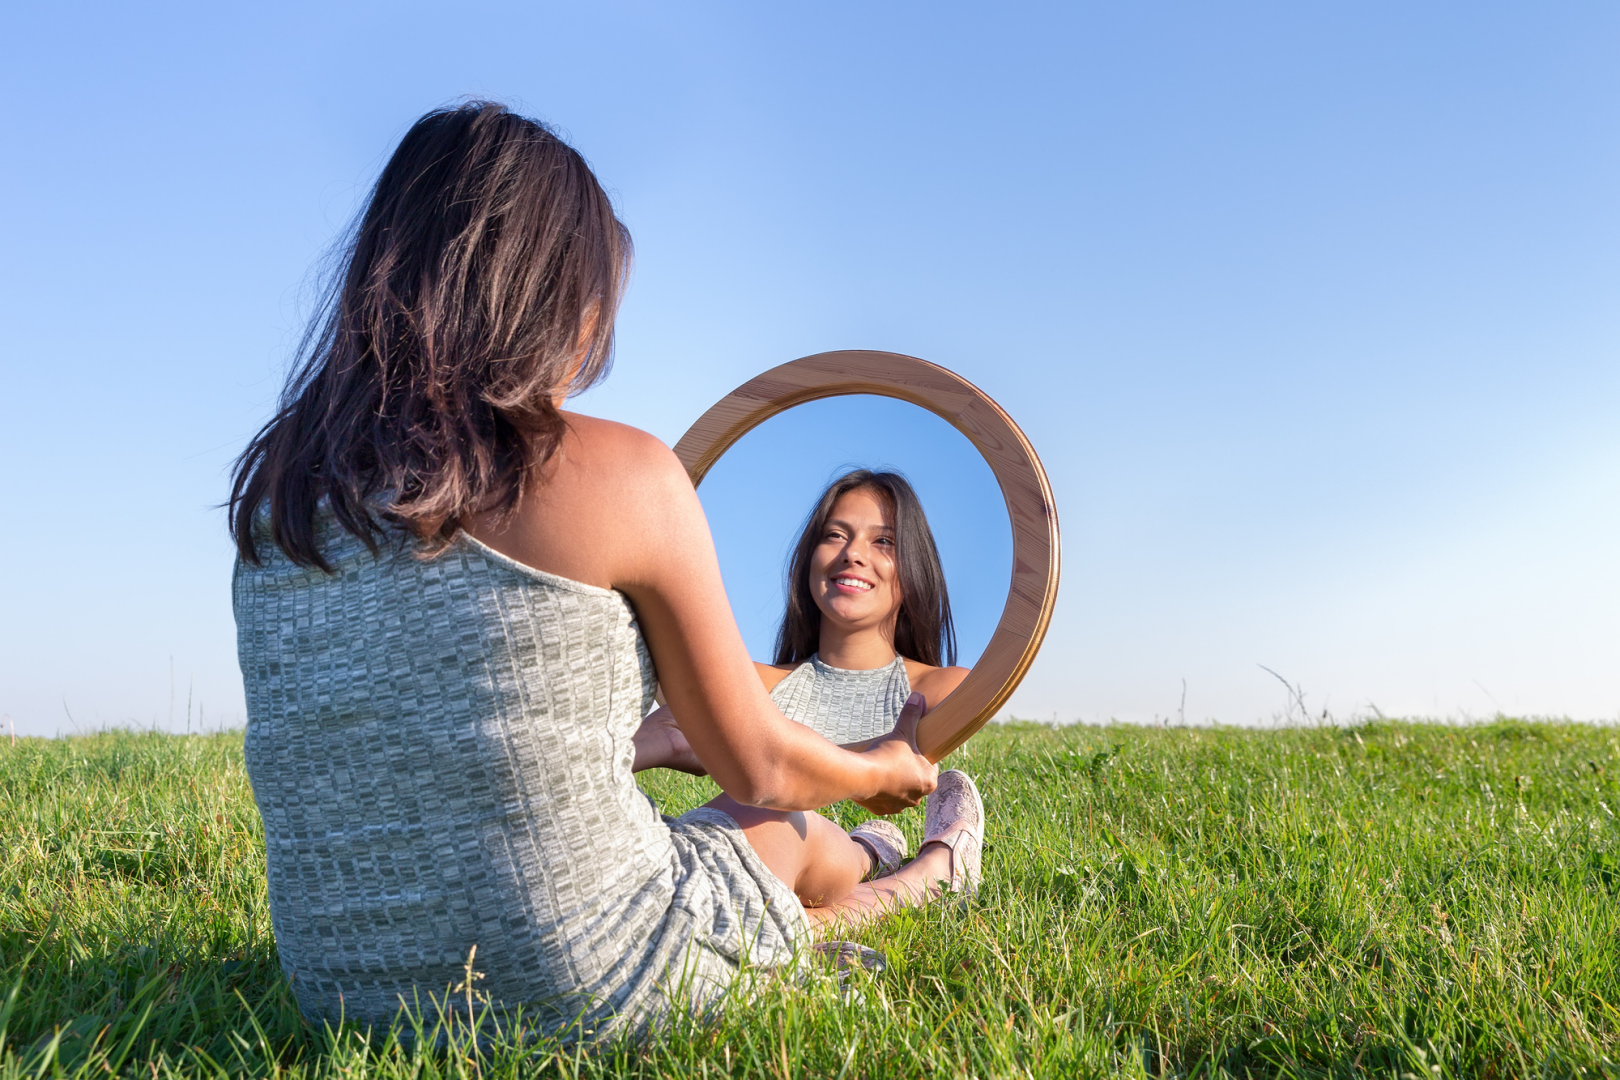 О женщина. Принятие себя и любовь к себе. Самооценка. Отражение в зеркале.